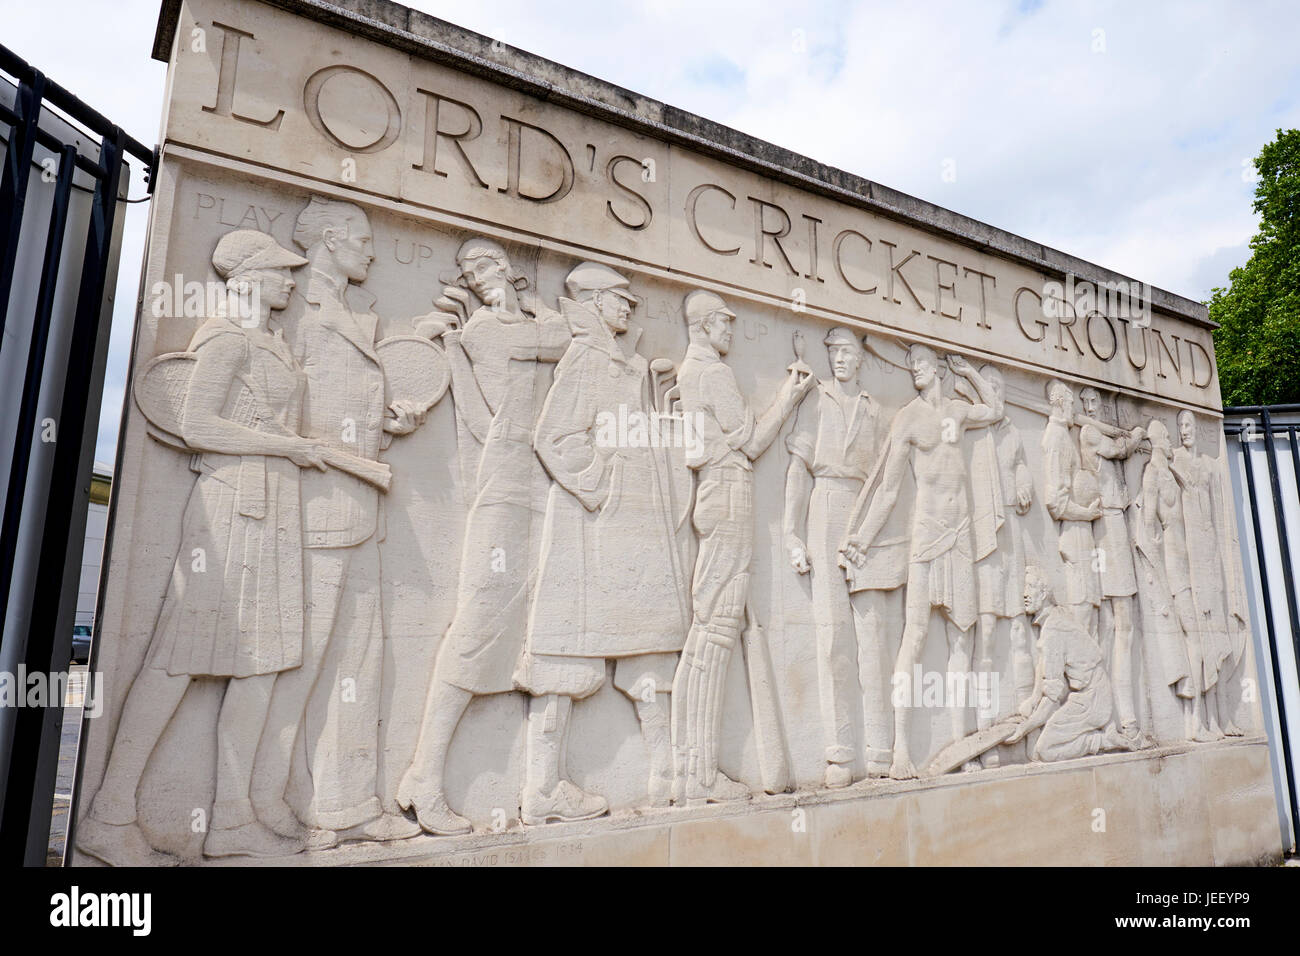 Frise sculpturale en dehors de Lords Cricket Ground montrant des joueurs de cricket avec les cendres, par Gilbert Bayes, St Johns Wood Road, Londres, UK Banque D'Images